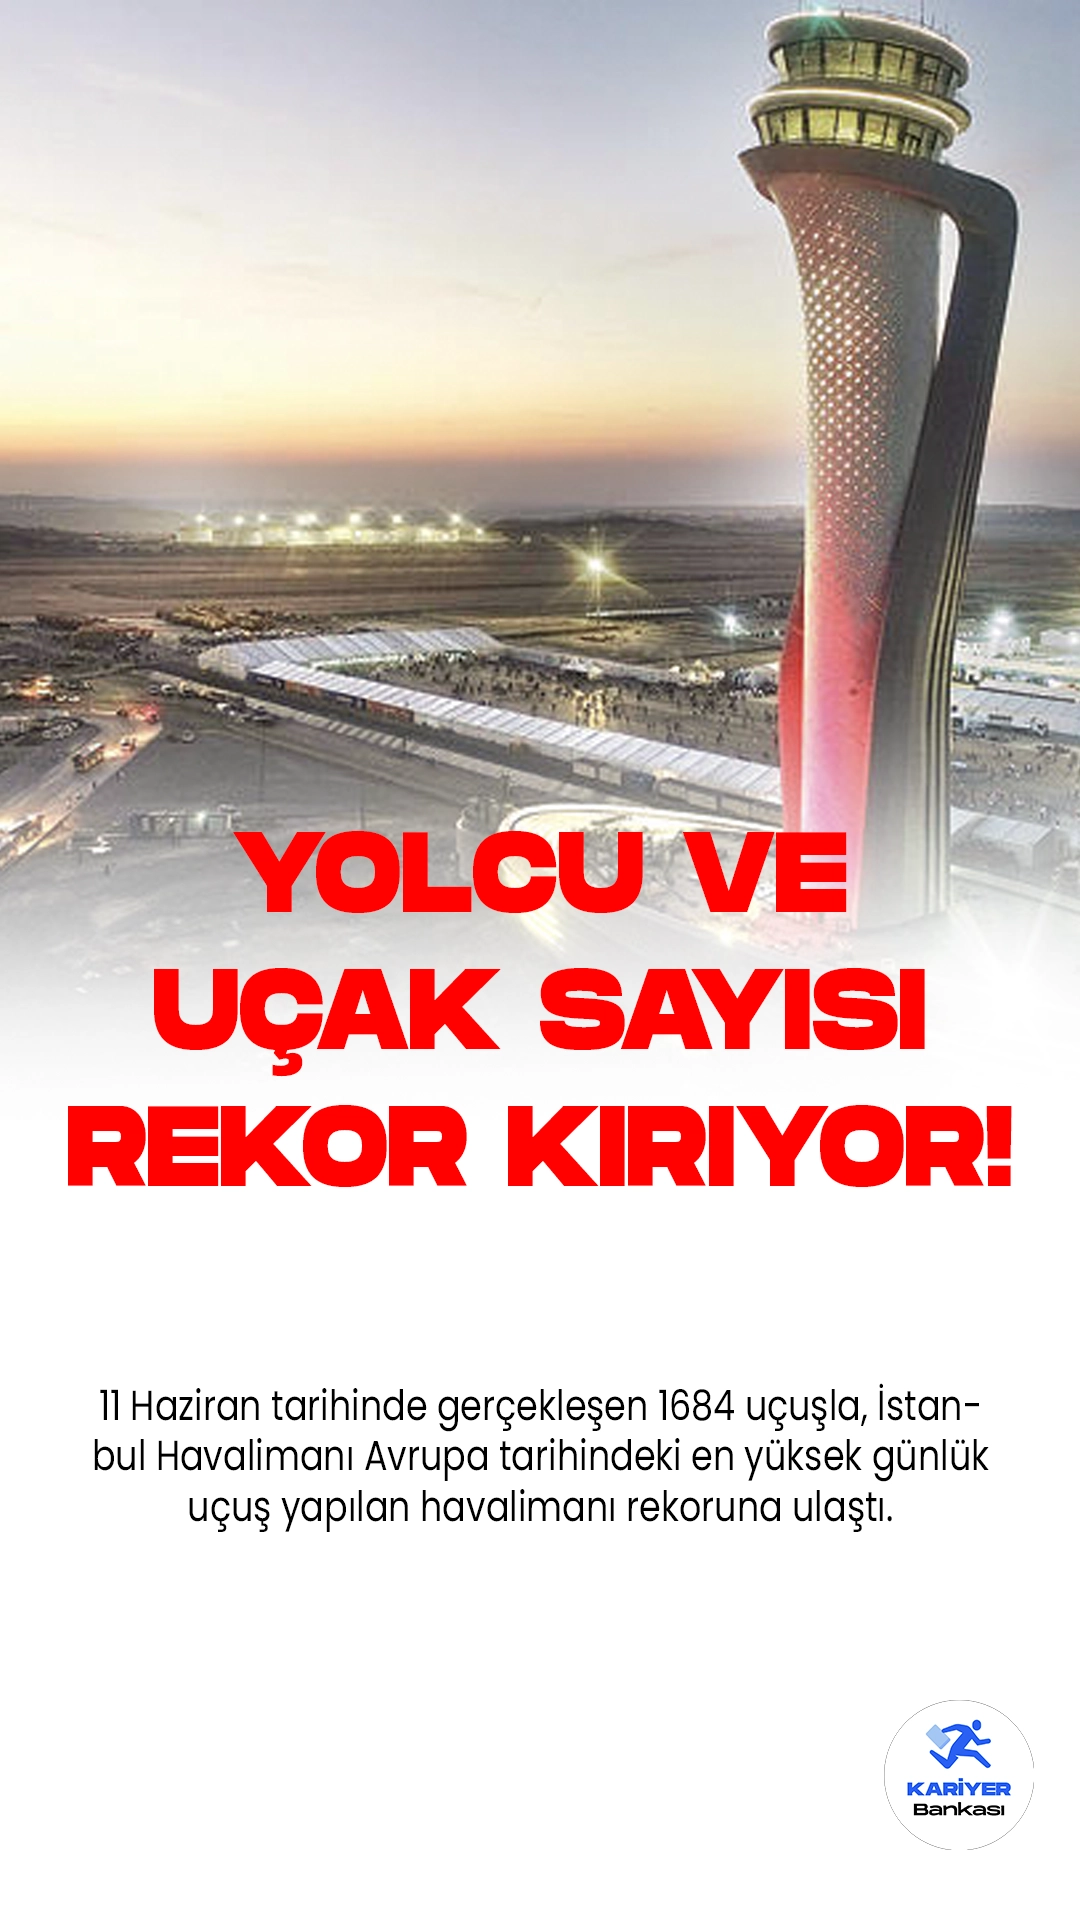 İstanbul Havalimanı, Cumhurbaşkanı Erdoğan'ı Taşıyan "TC-ANK" Uçağıyla İlk Seferini Gerçekleştirdi.Cumhurbaşkanı Recep Tayyip Erdoğan'ı taşıyan "TC-ANK" isimli uçağın ilk seferi, 21 Haziran 2018 tarihinde gerçekleştirilerek İstanbul Havalimanı'nın resmi açılışı ise 29 Ekim 2018 tarihinde yapıldı. Bugüne kadar ise İstanbul Havalimanı, tam 1 milyon 447 bin 716 uçak tarafından kullanıldı.